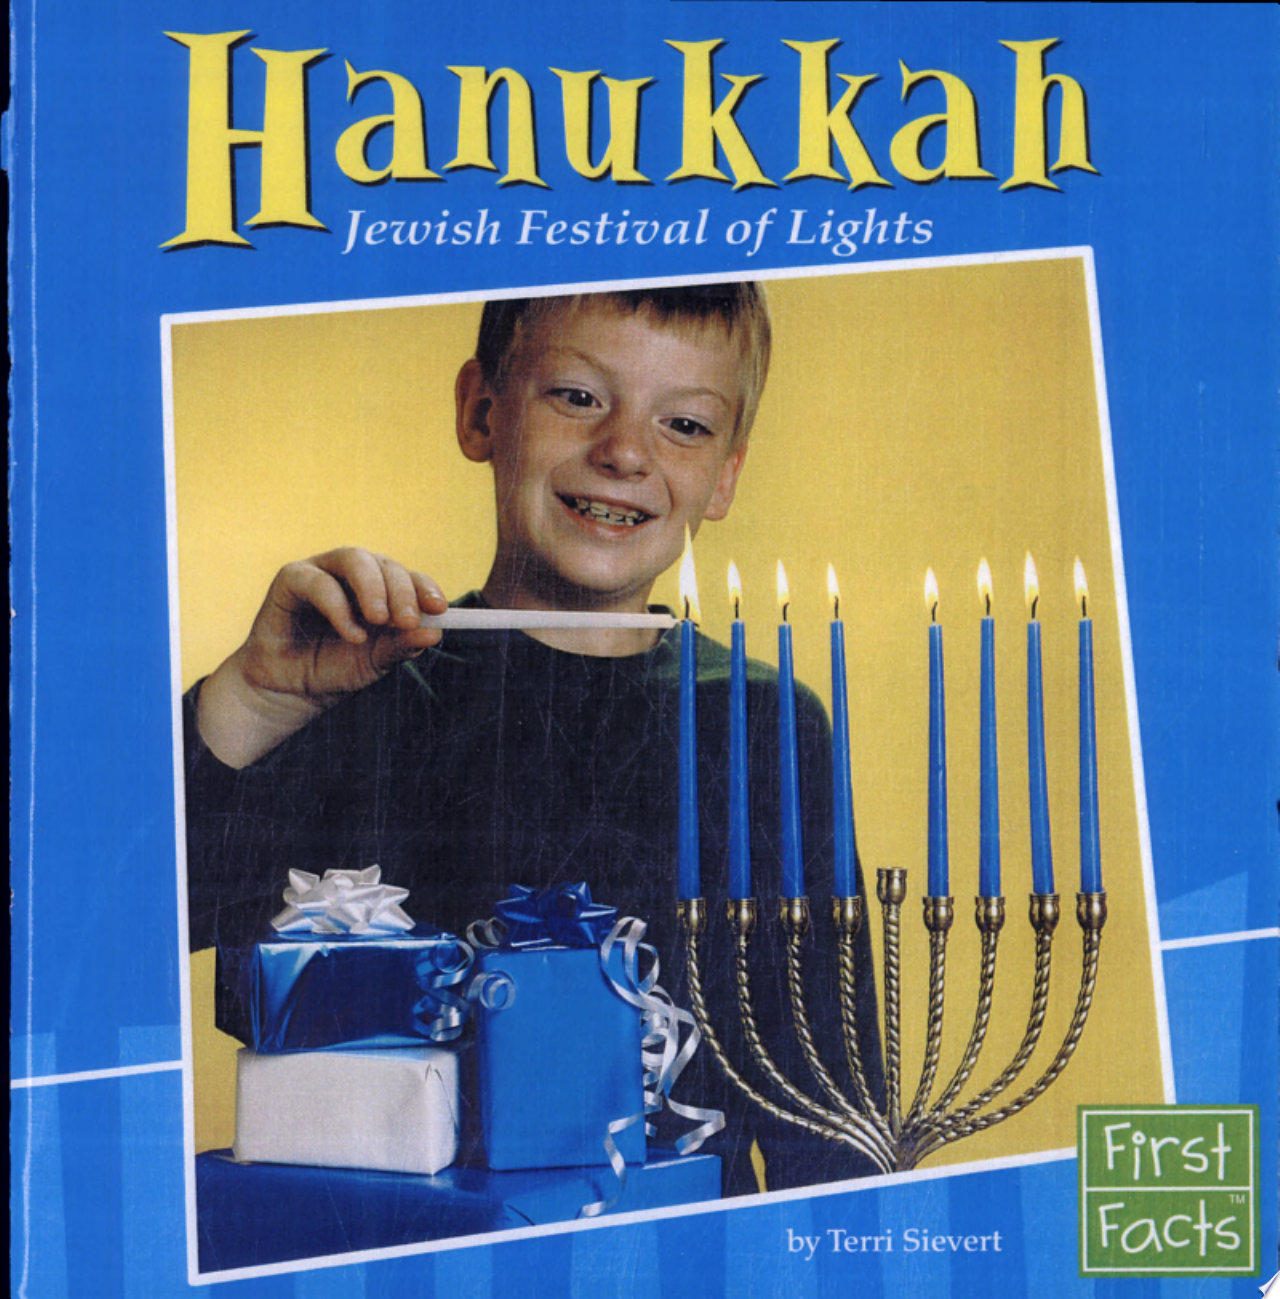 Image for "Hanukkah"